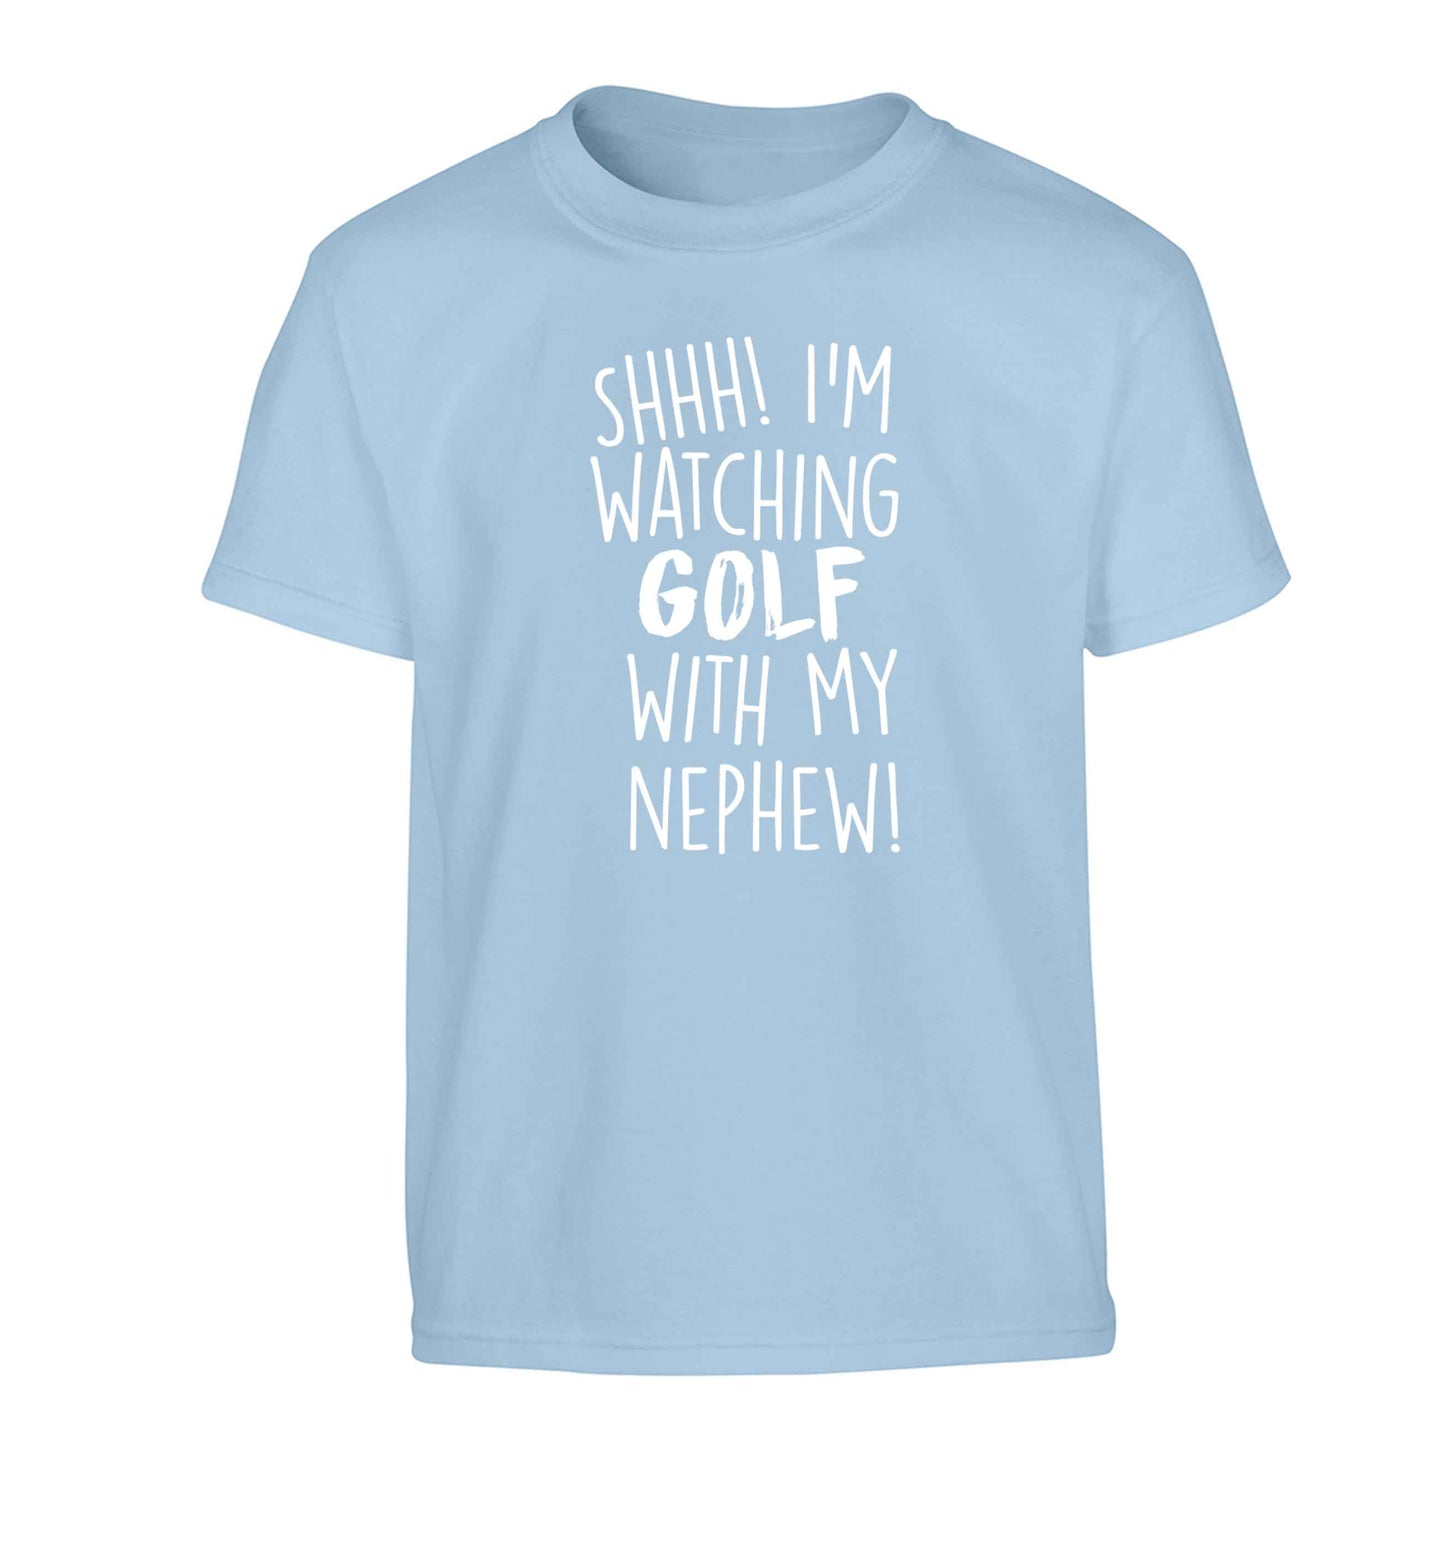 Shh I'm watching golf with my nephew Children's light blue Tshirt 12-13 Years